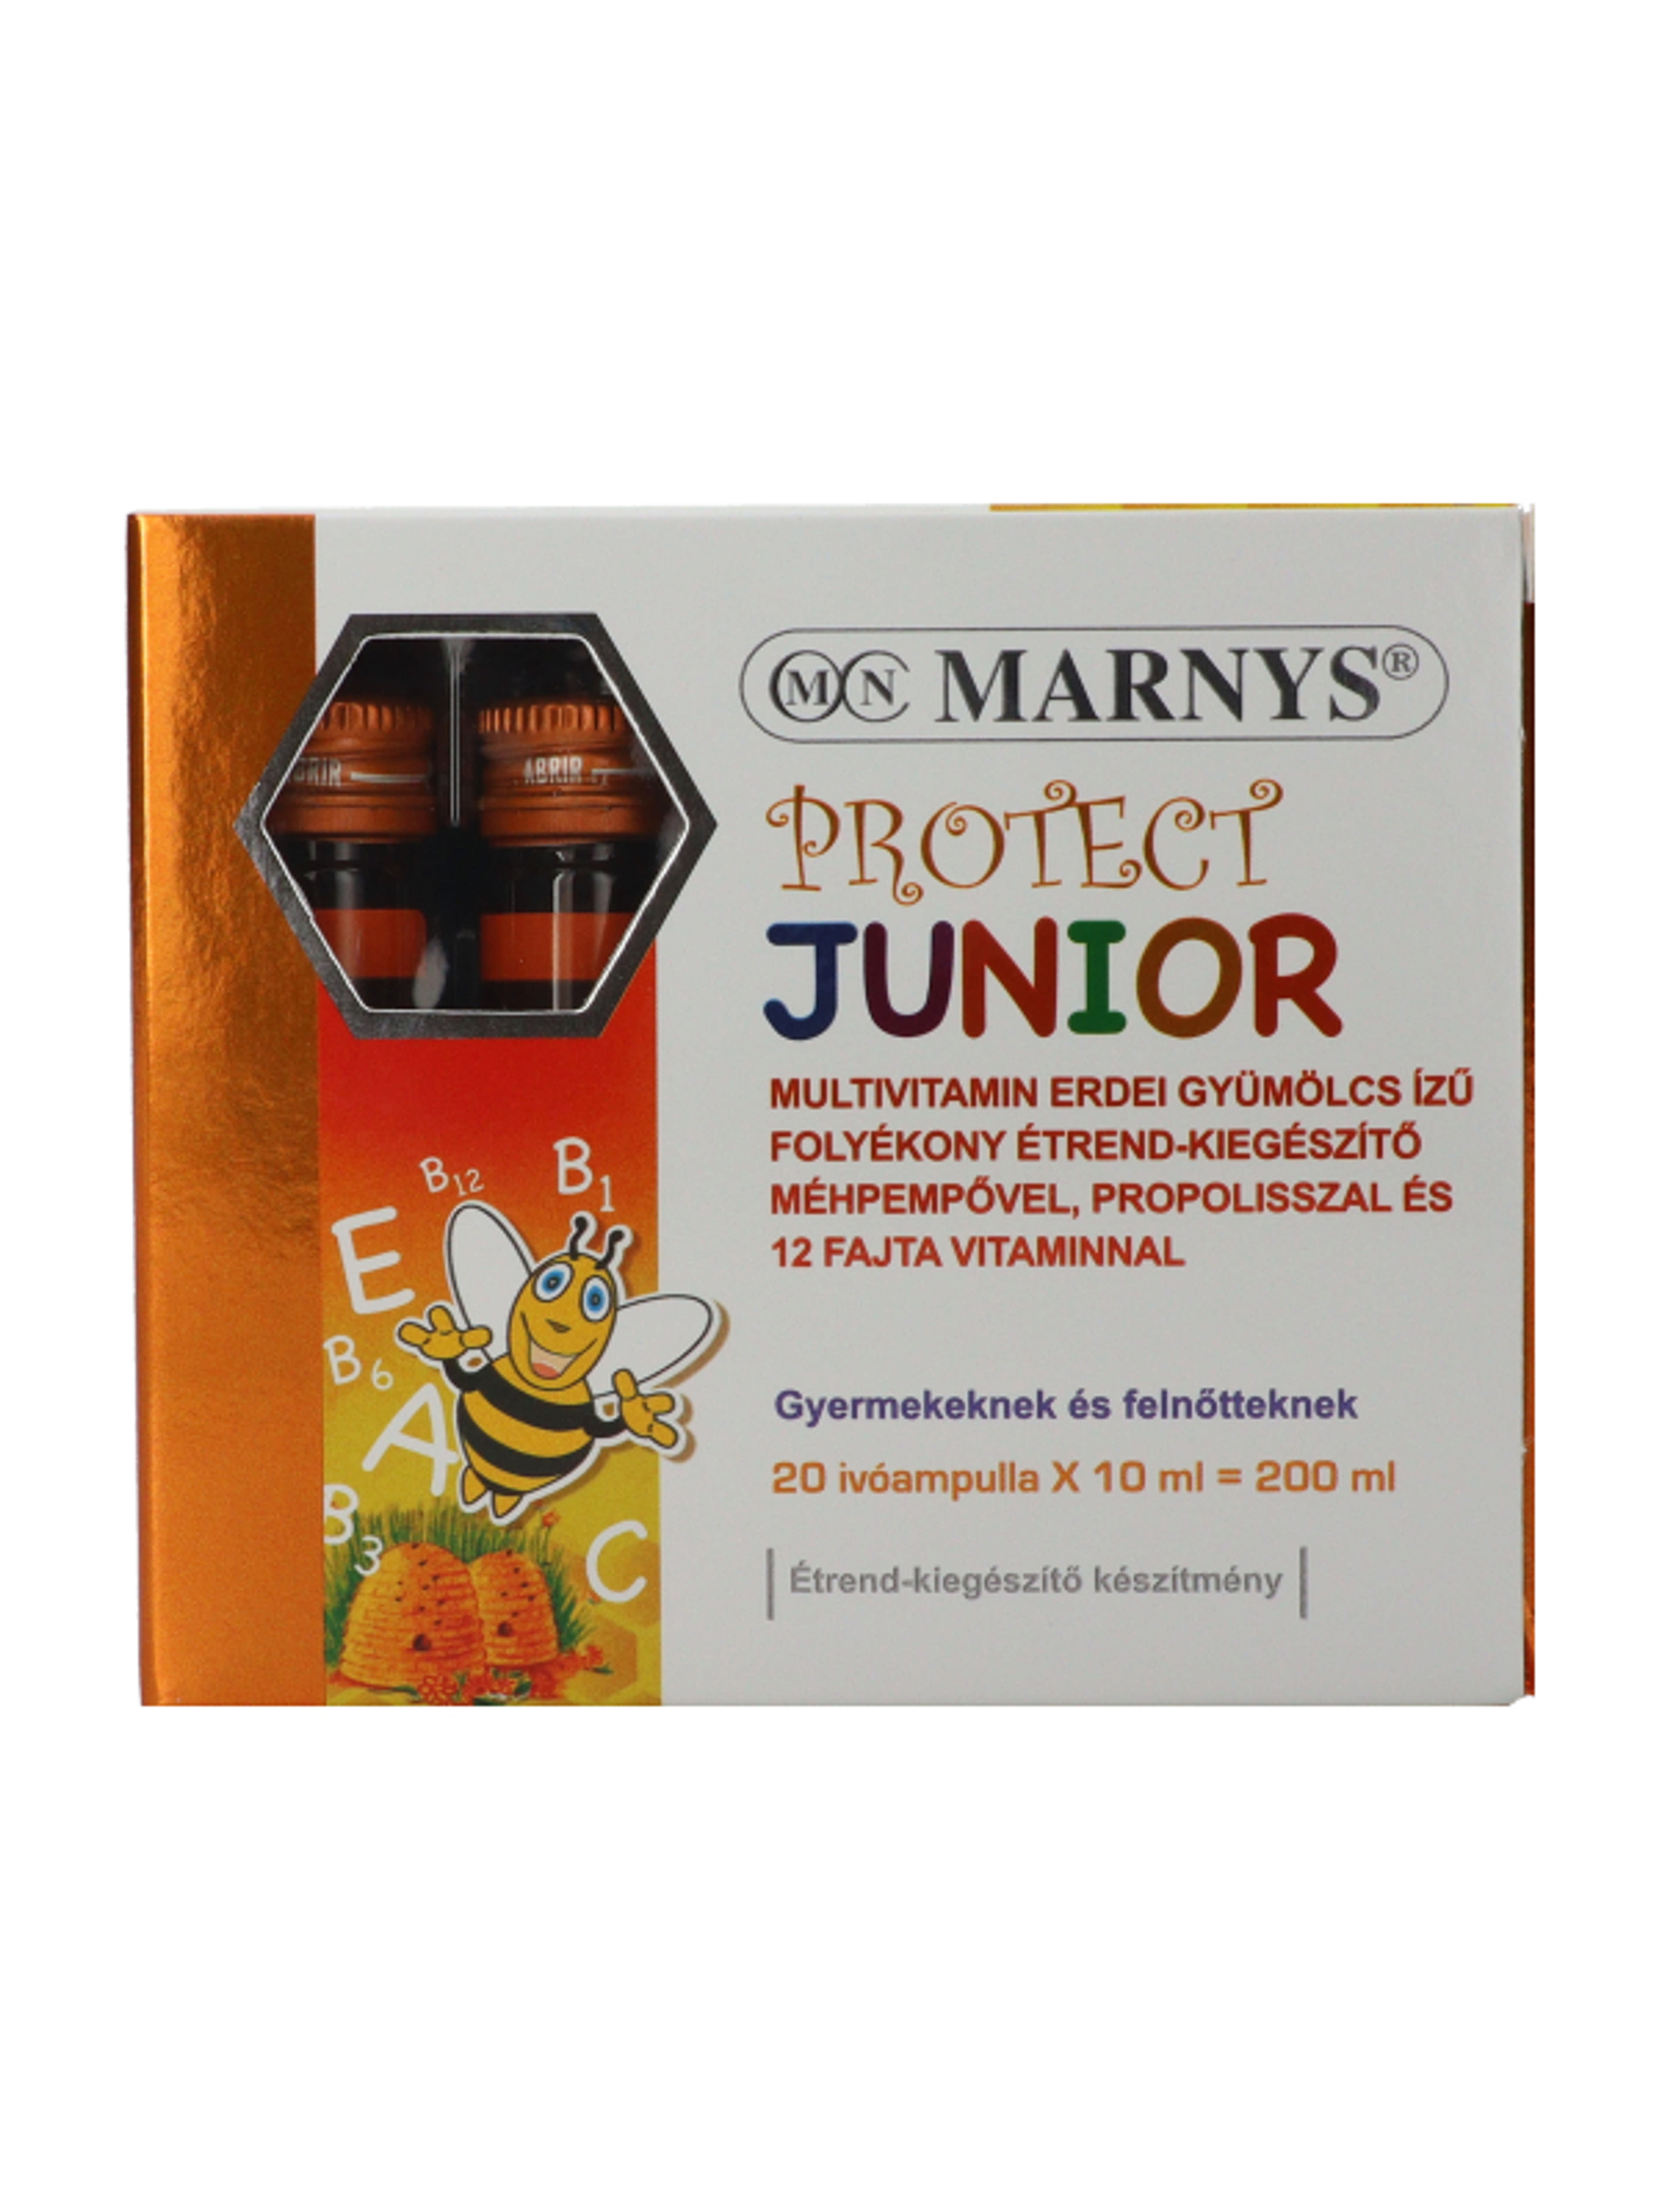 Marnys Protect Junior folyékony multivitamin méhpempővel és propolisszal ivóampullában (20 x 10 ml) - 200 ml-1